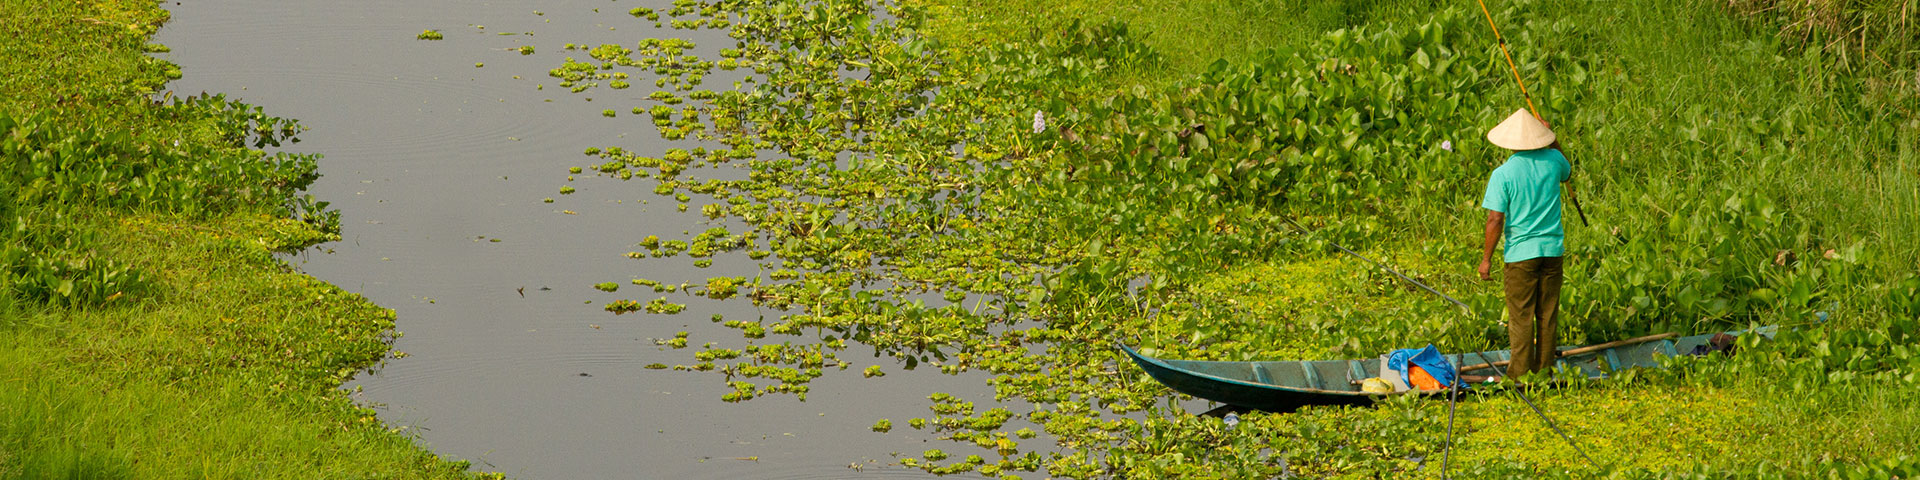 In einem Sumpf steht ein Mann in einem Kanu und hält eine Angel.